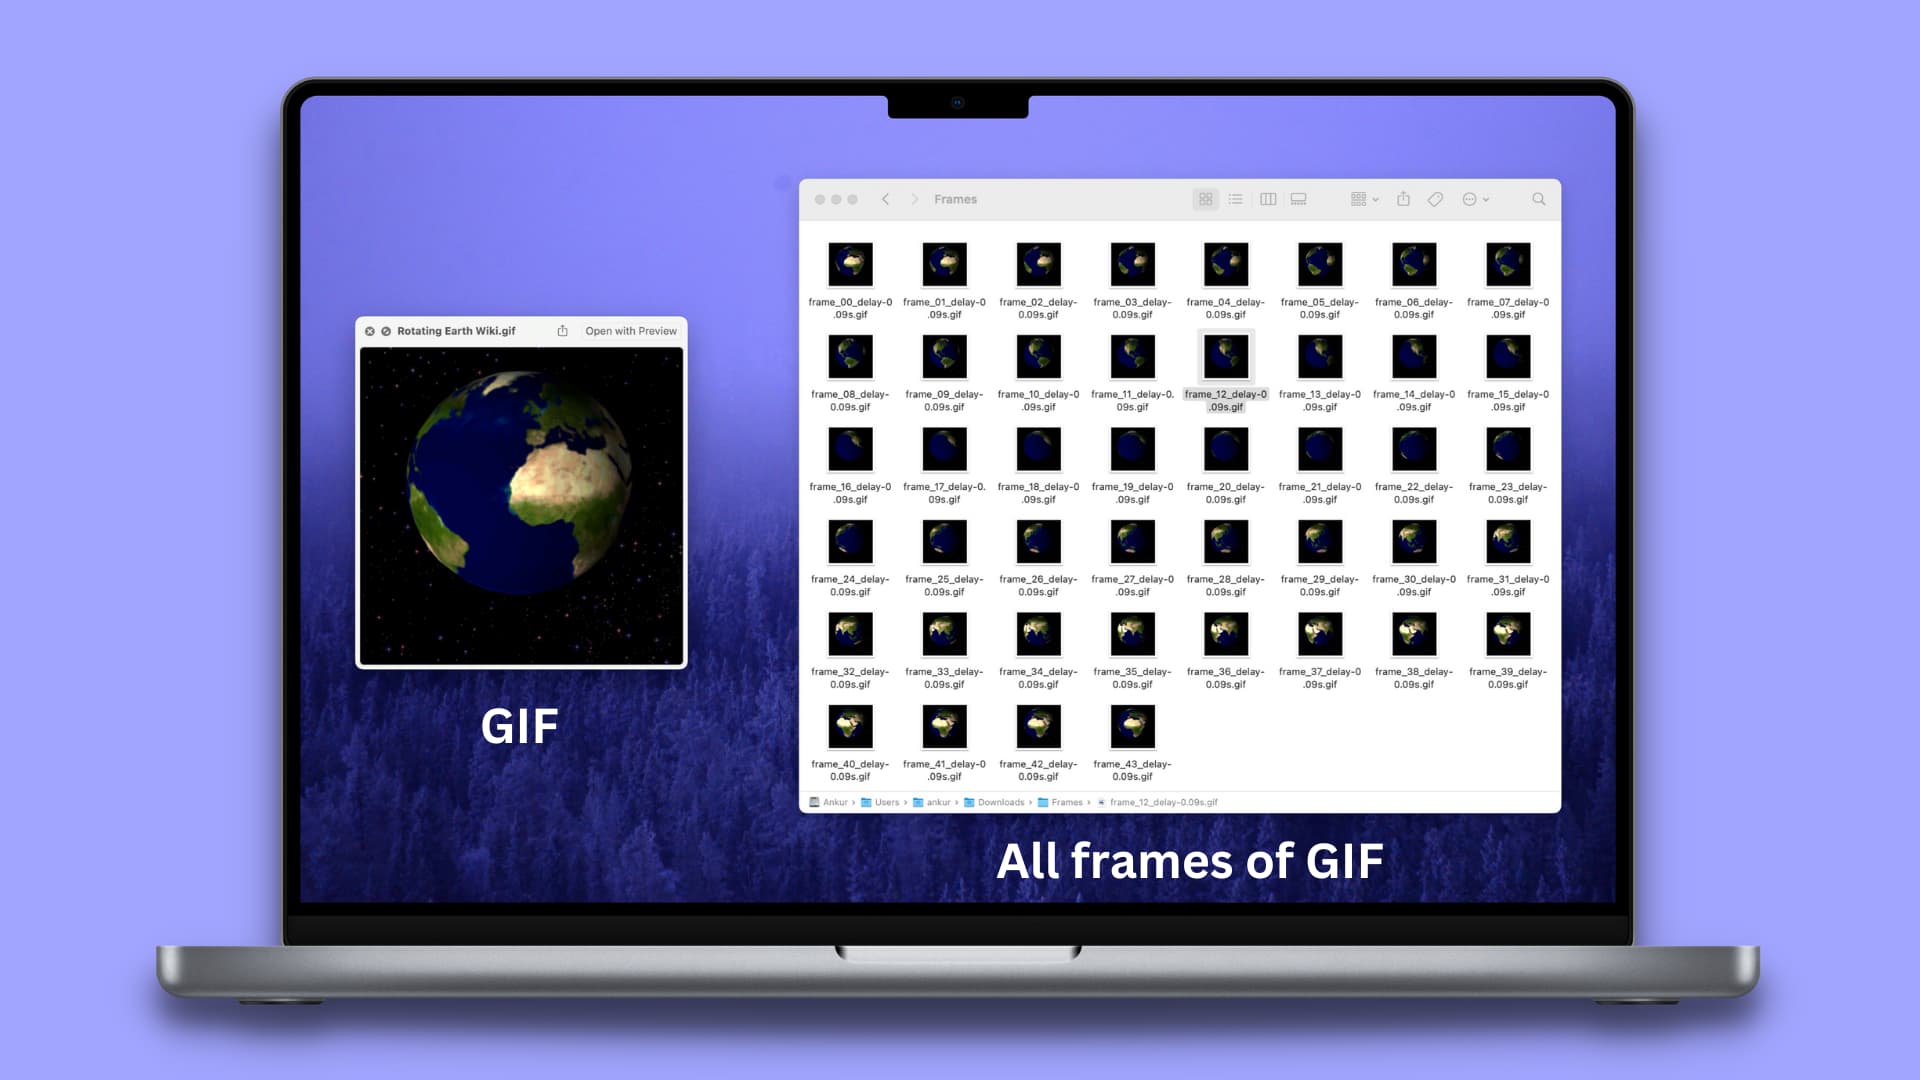 Enregistrement d'images individuelles d'un GIF en tant qu'images séparées sur Mac